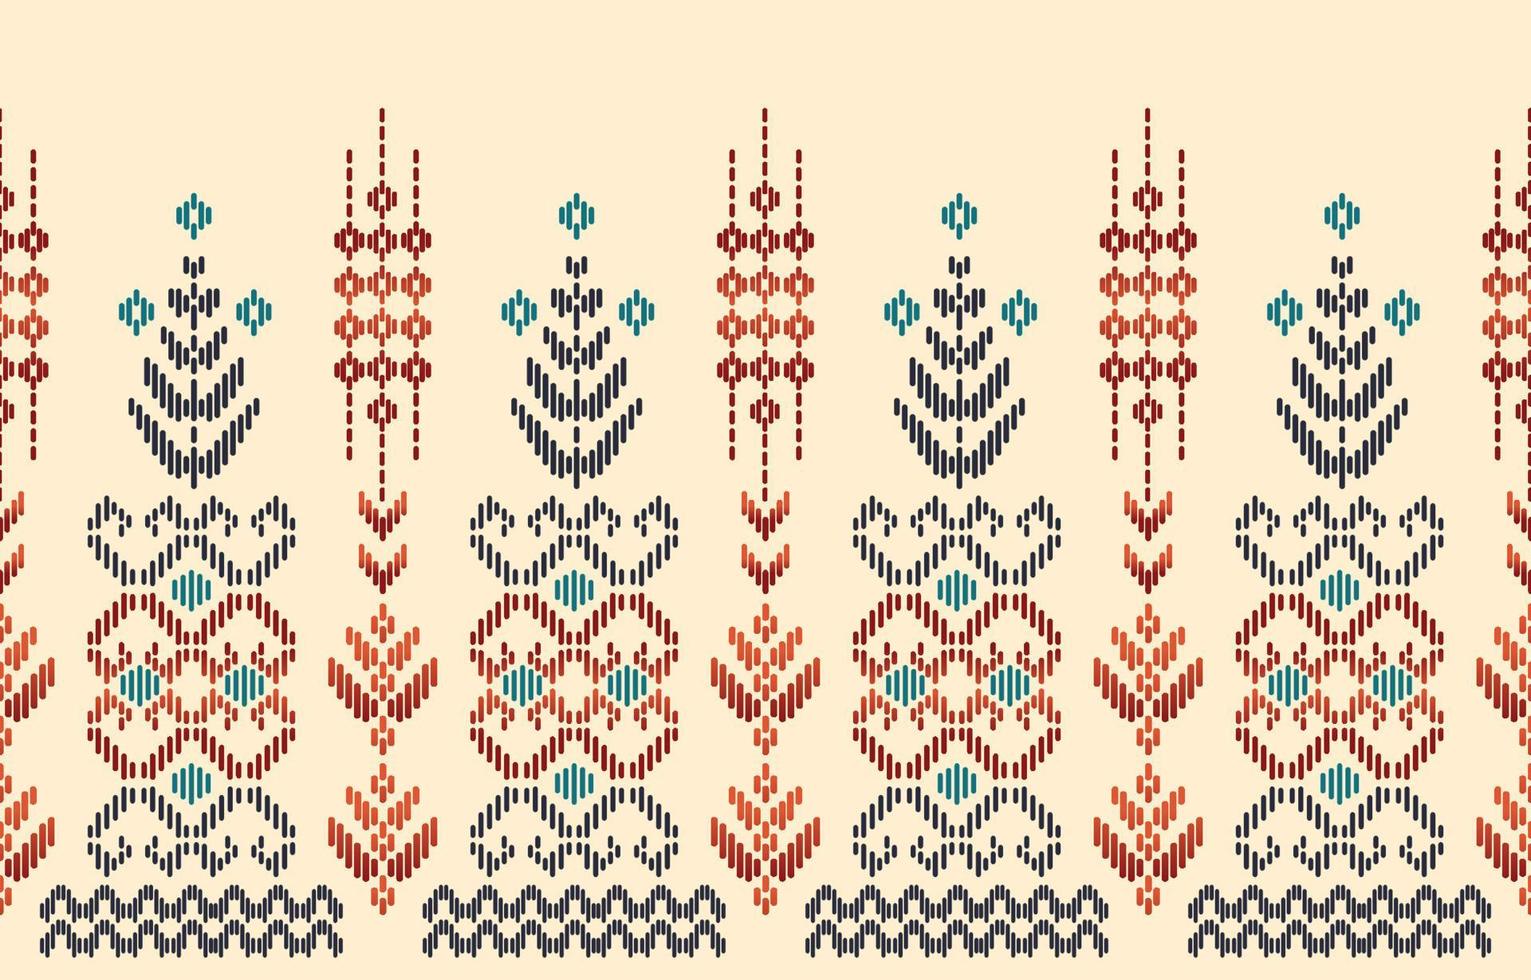 sfondo etnico astratto. senza cuciture in tribale, ricamo popolare, tessuto ikat nativo. stampa di ornamenti d'arte geometrica azteca. design per moquette, carta da parati, abbigliamento, avvolgimento, tessile, tessuto, decorativo vettore